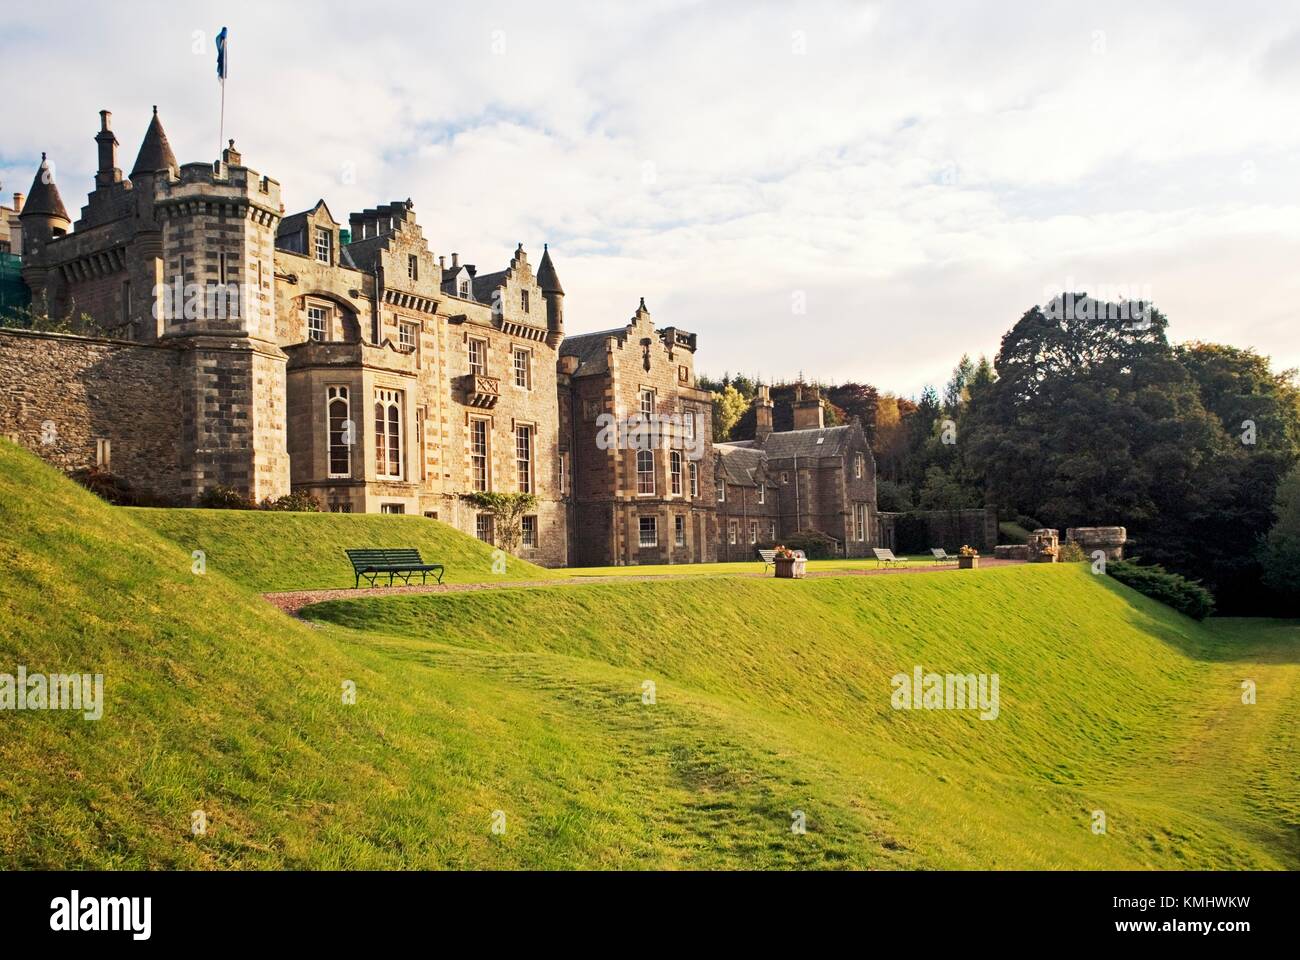 Abbotsford House, romancier victorien Sir Walter Scott's home près de Galashiels dans la région des Borders, en Écosse Banque D'Images